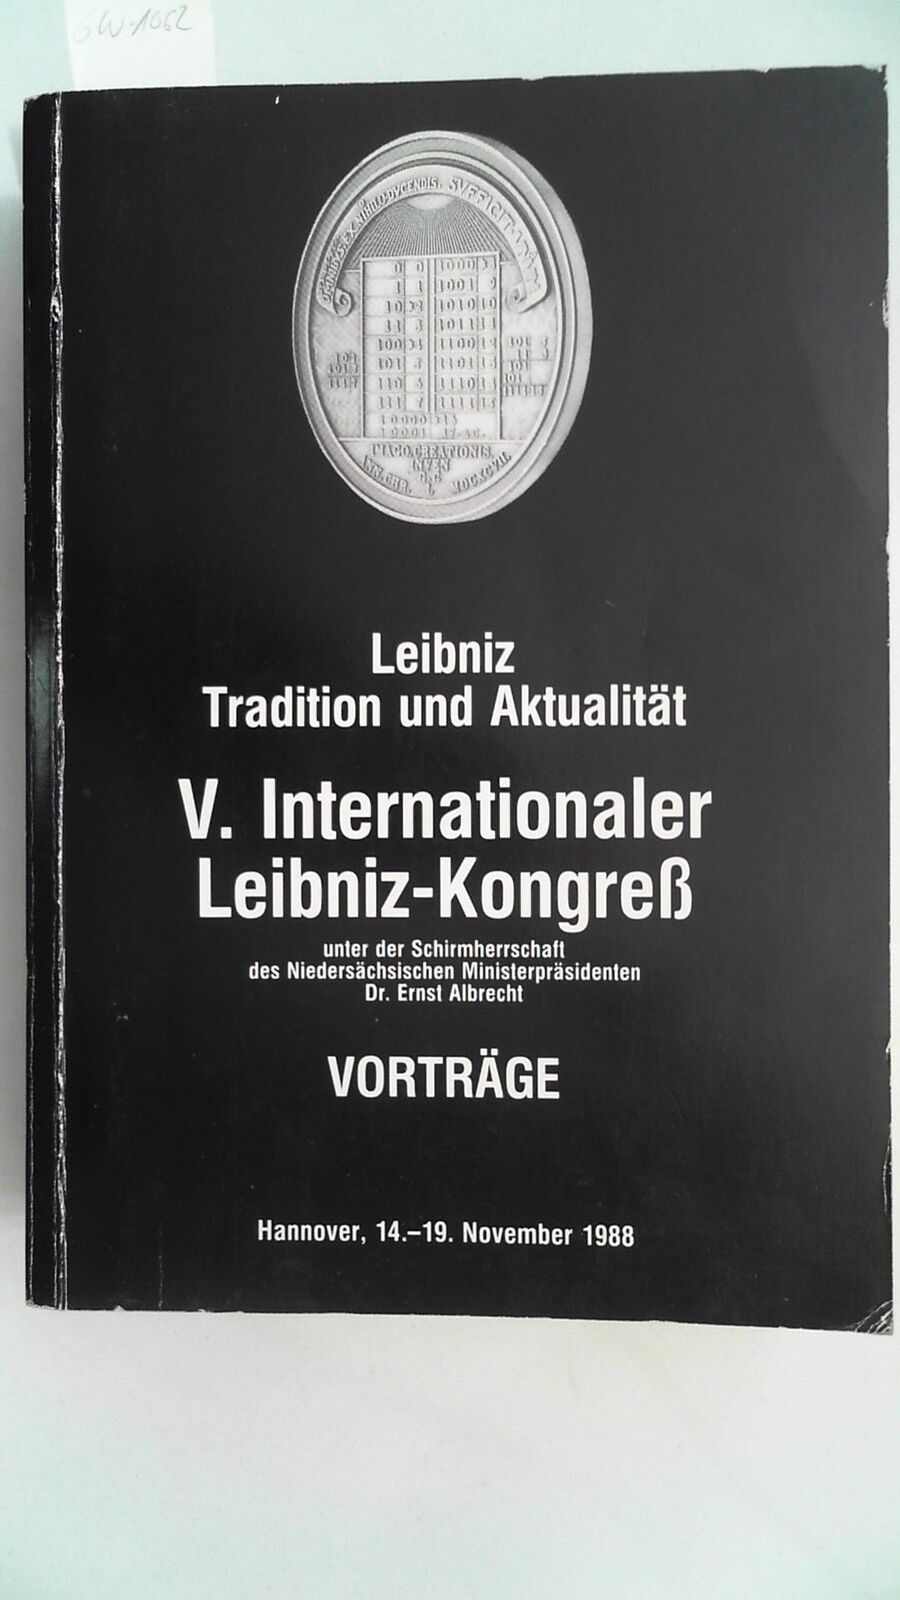 Imagen de portada del libro Leibniz, Tradition und Aktualität